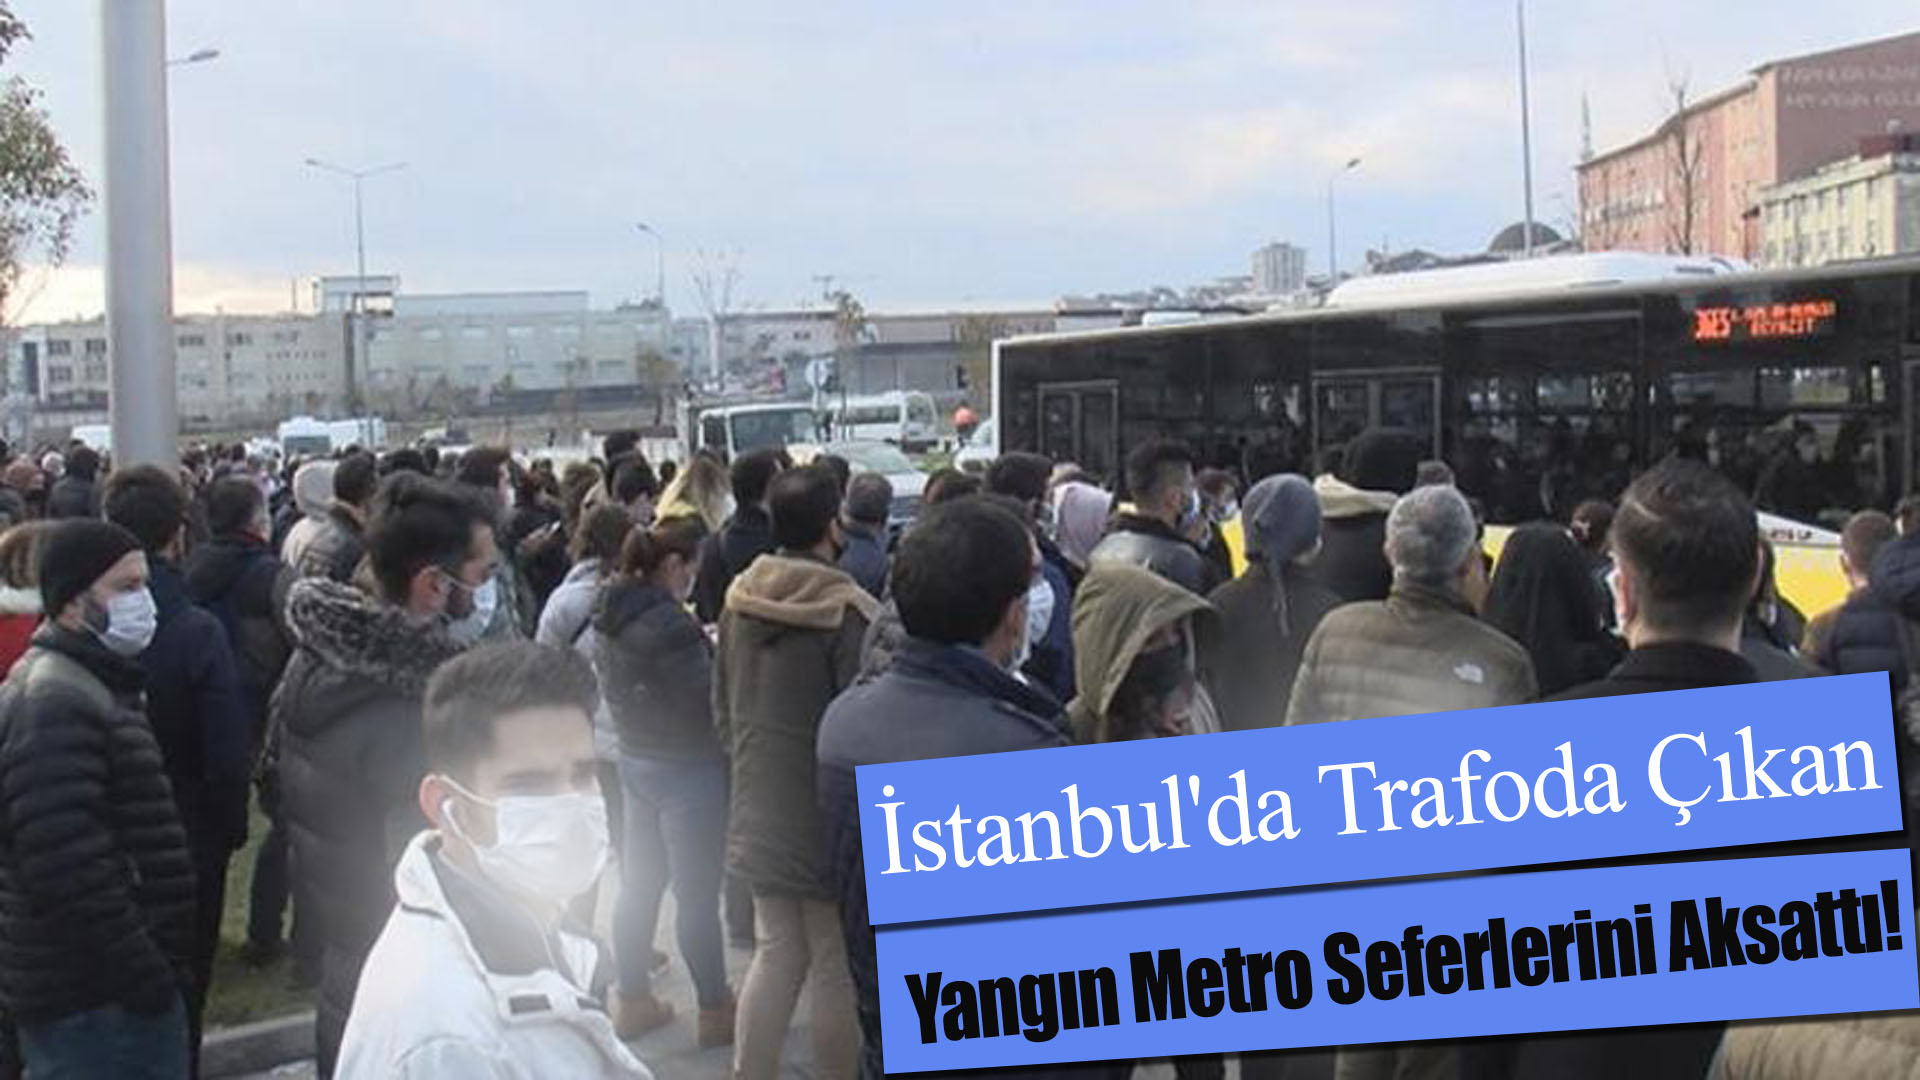 İstanbul’da Trafoda Çıkan Yangın Metro Seferlerini Aksattı!